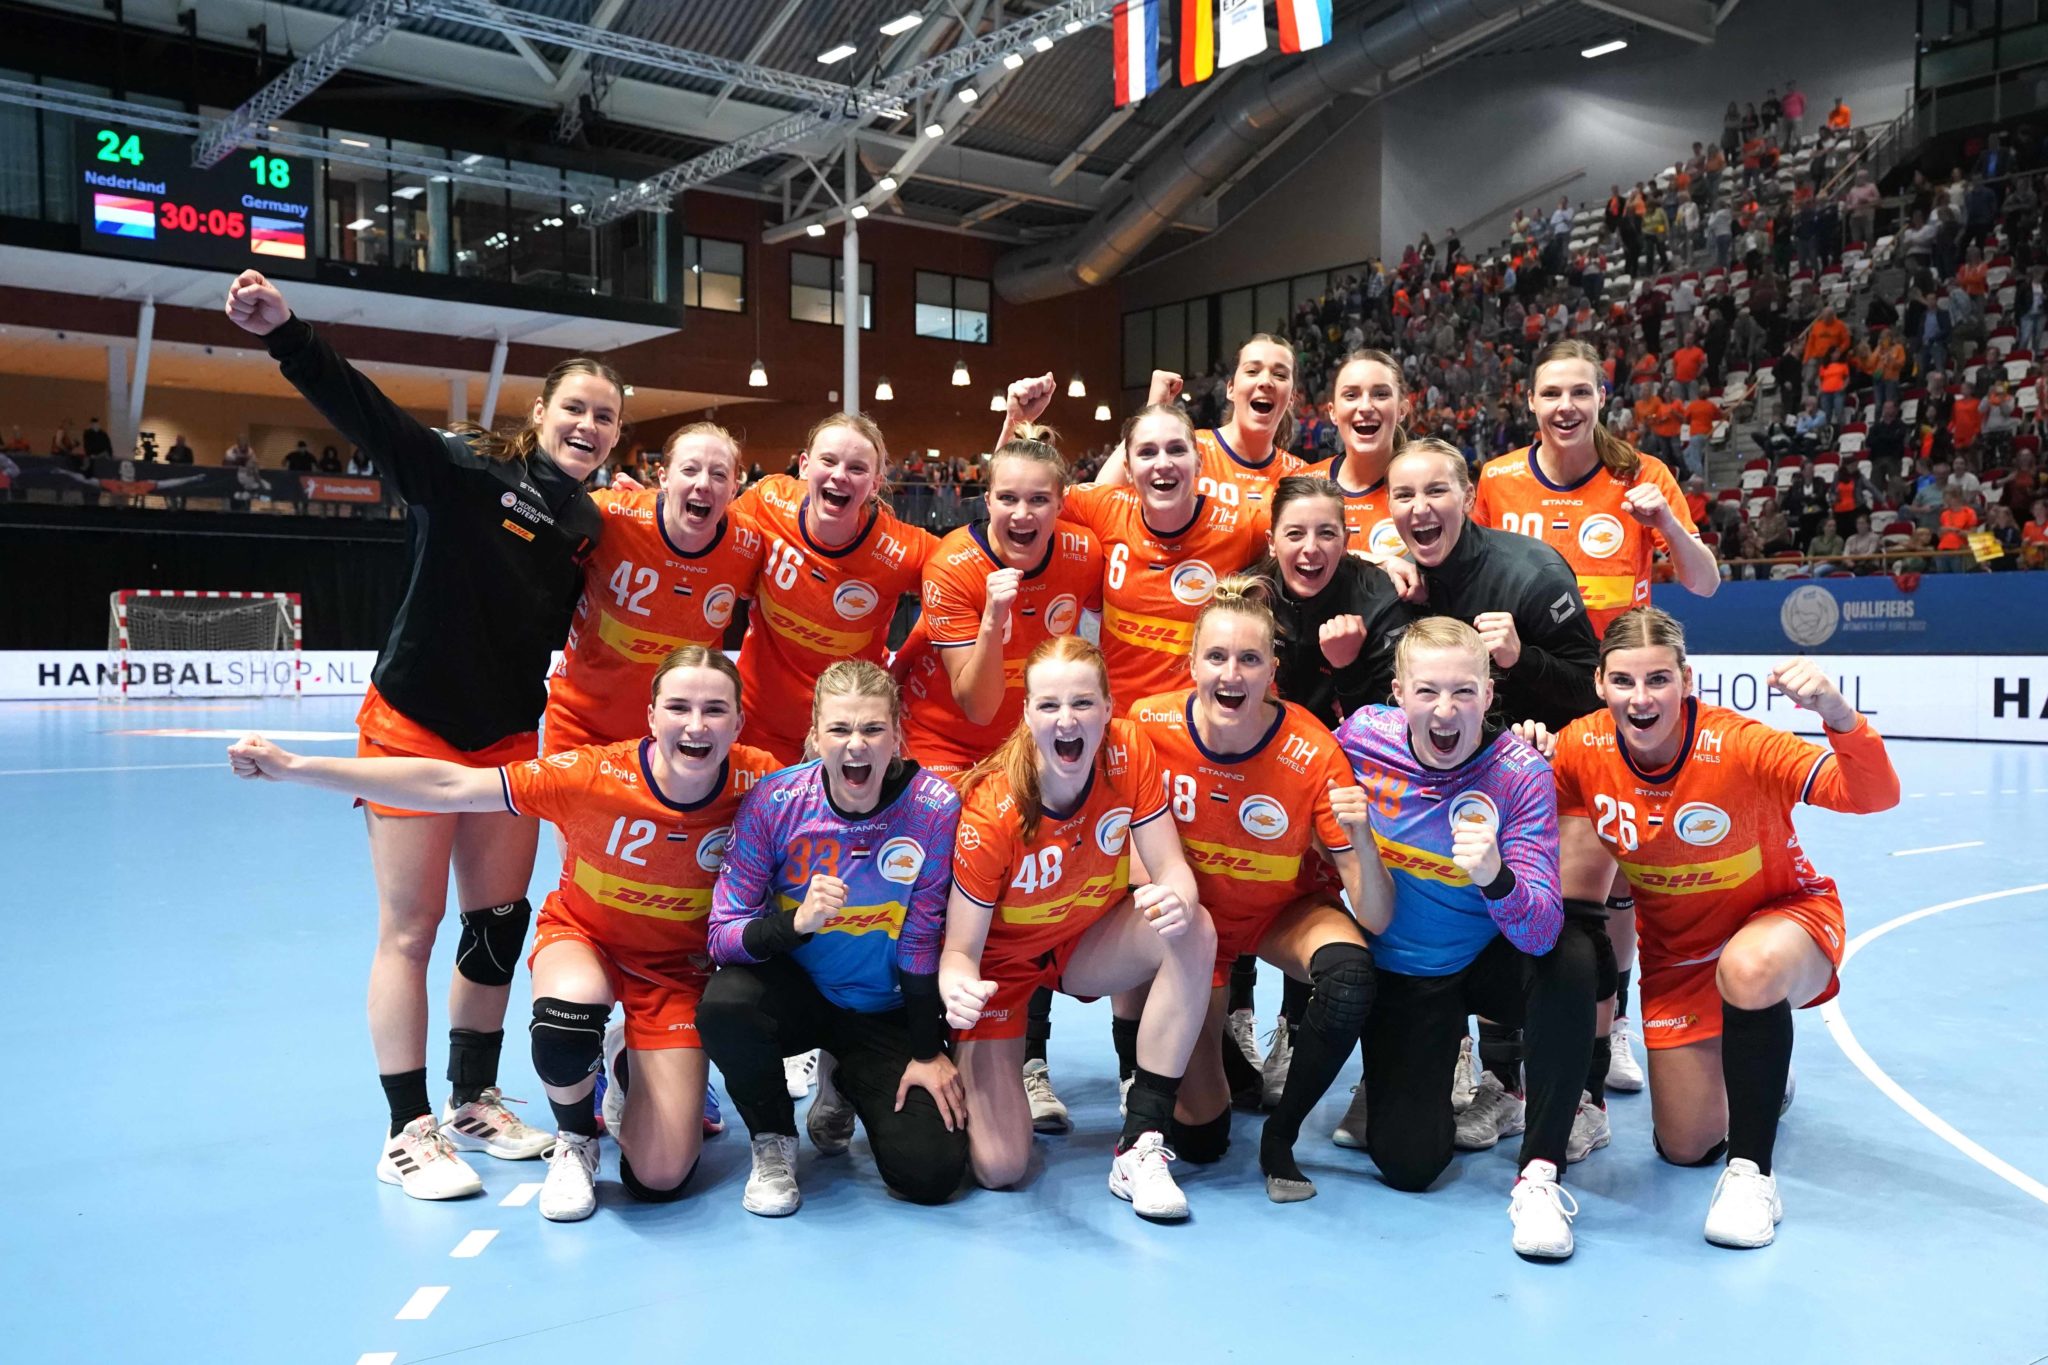 TeamNL Handbaldames Winnen Oefenwedstrijd Van Duitsland